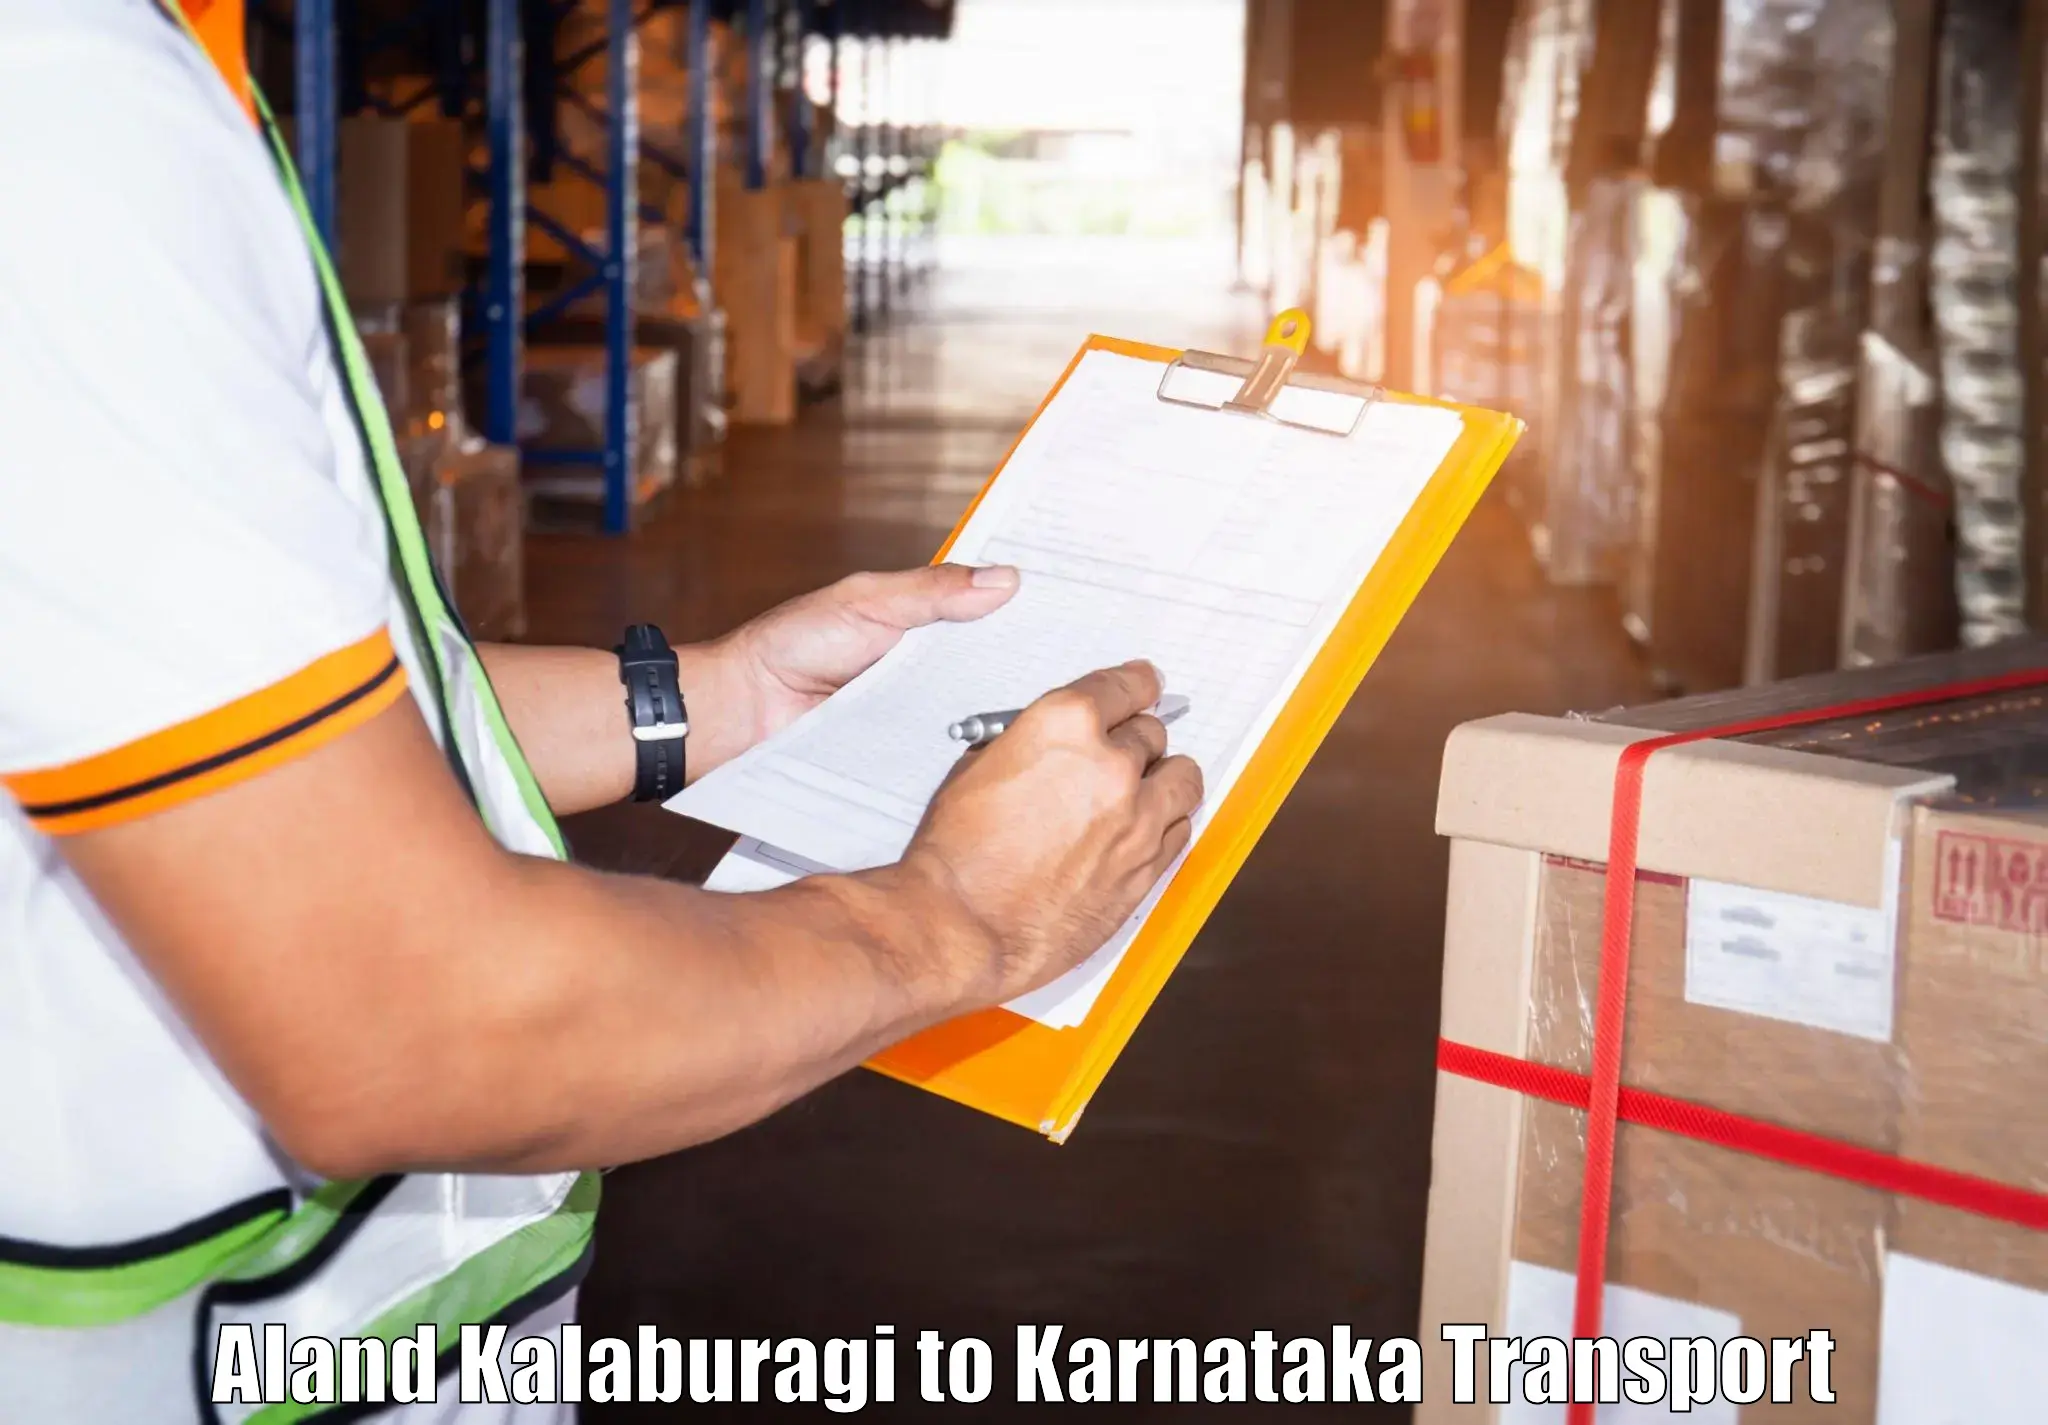 Container transport service Aland Kalaburagi to Nagamangala